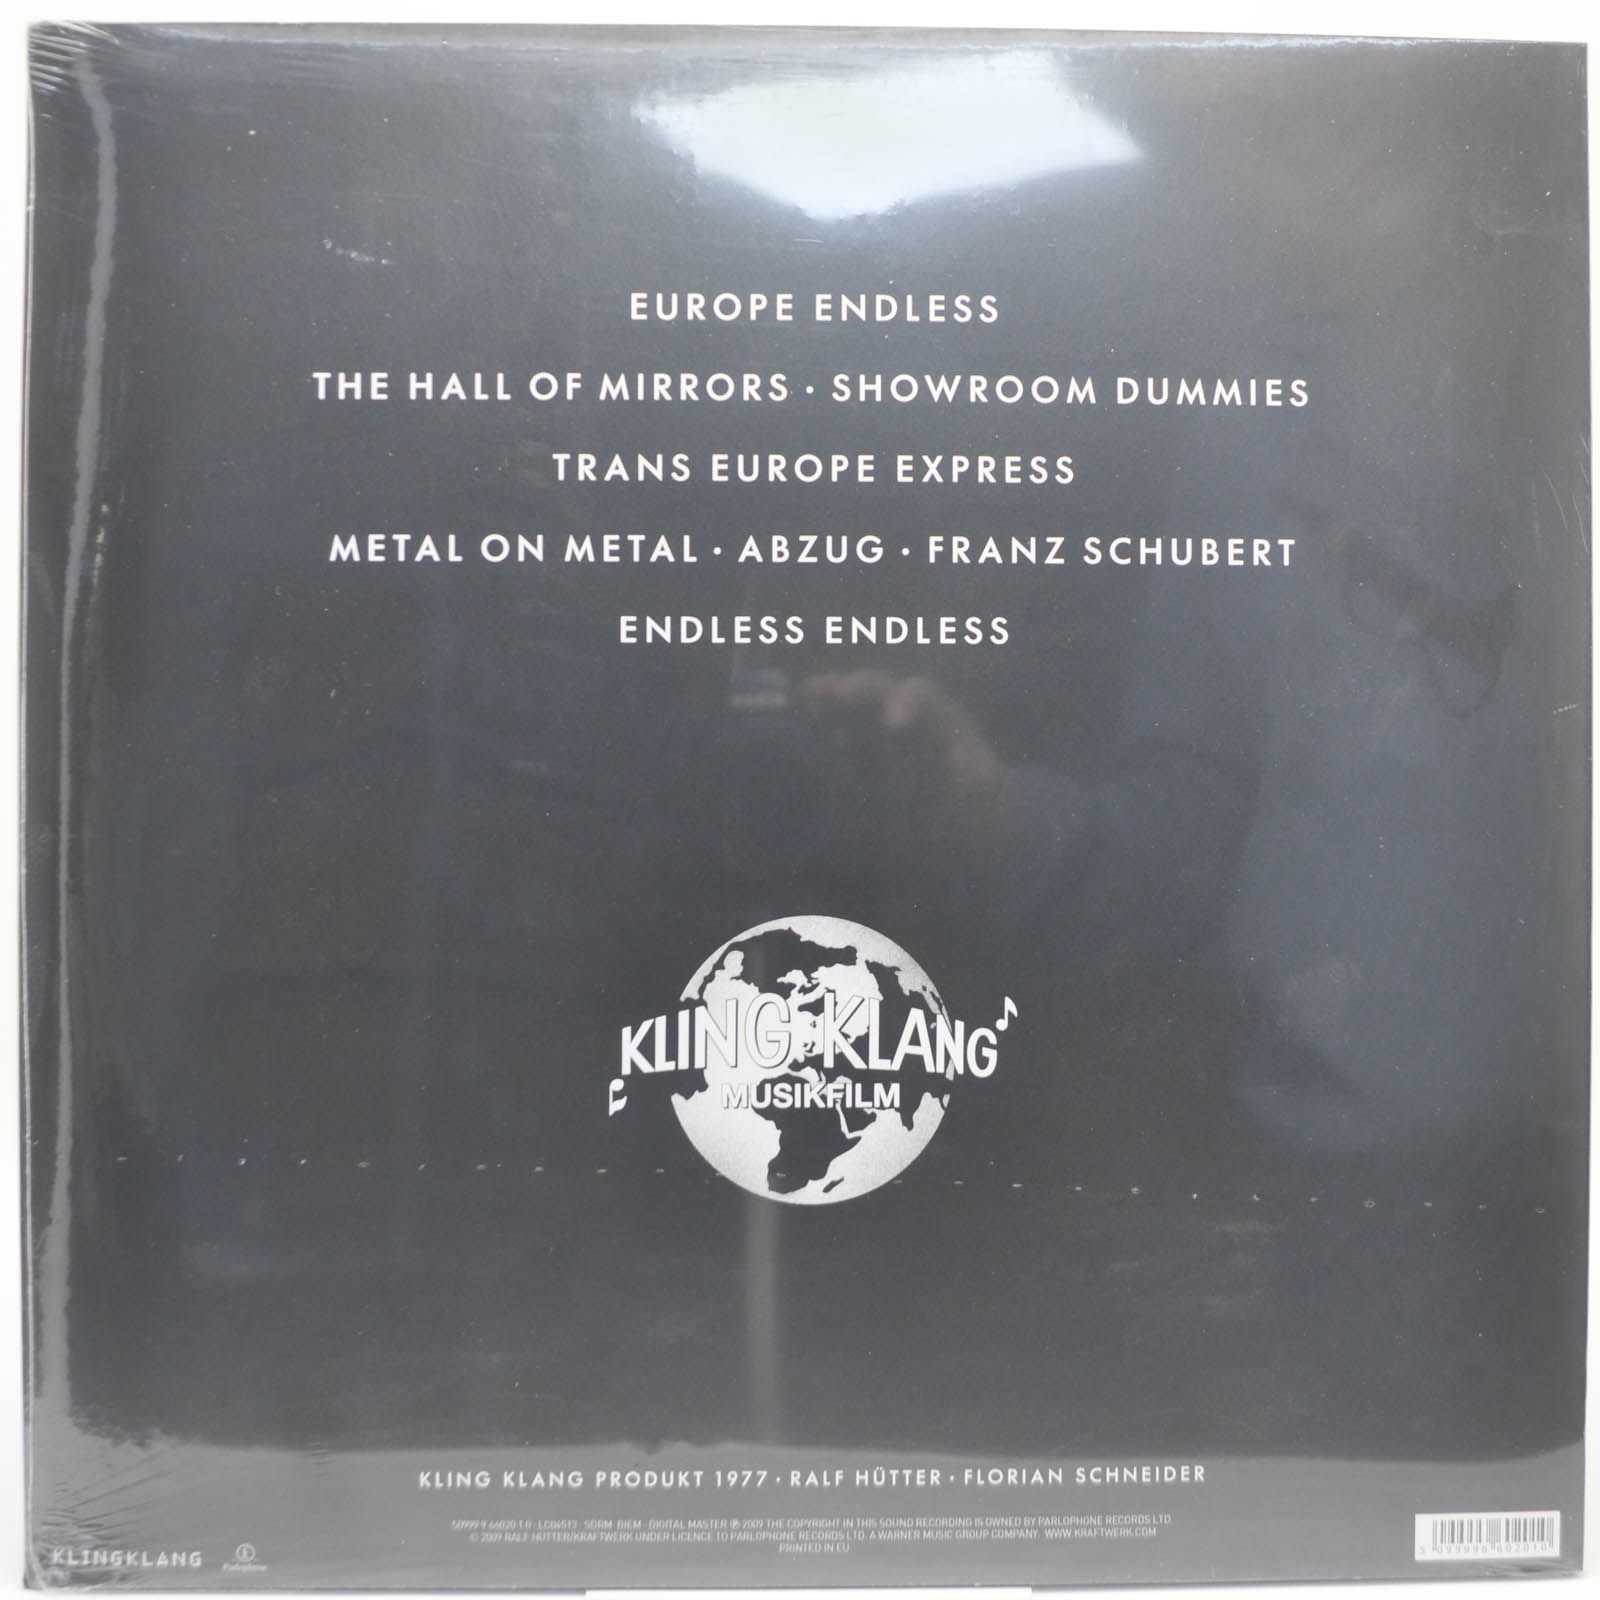 Kraftwerk — Trans Europe Express, 1977